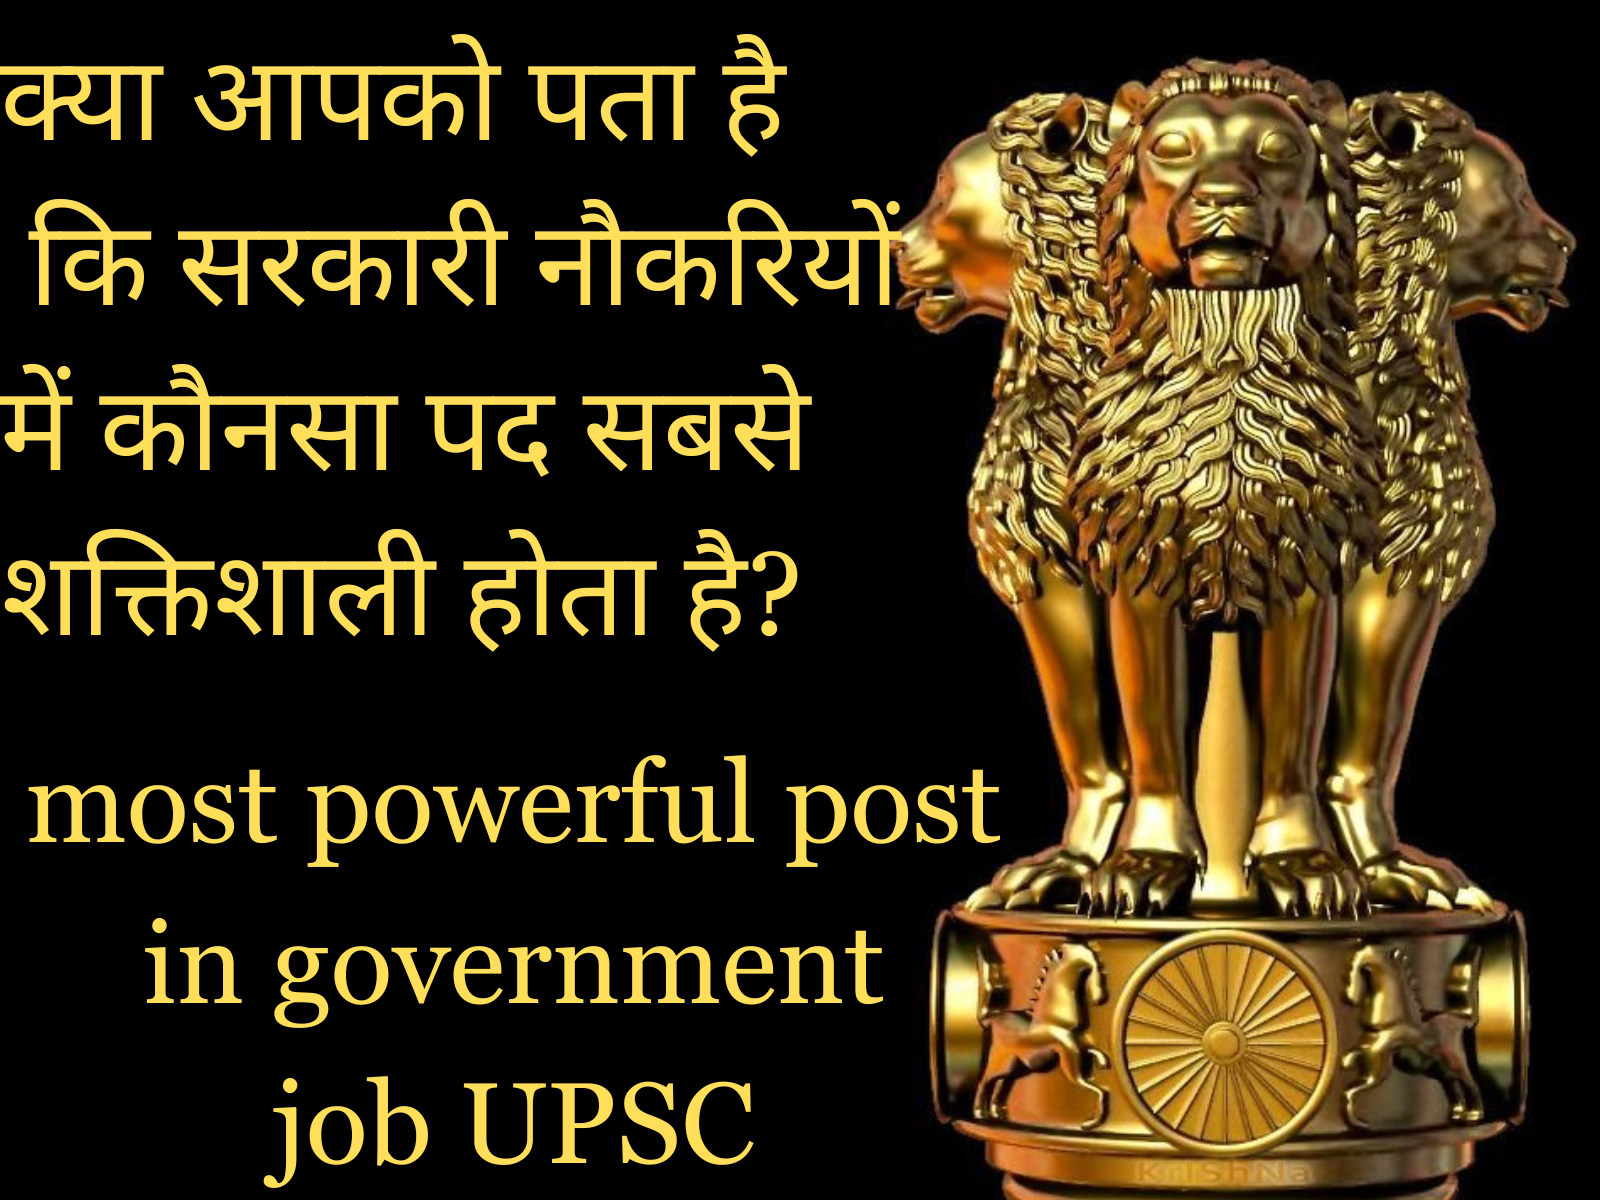 क्या आपको पता है कि सरकारी नौकरियों में कौनसा पद(www.successchronicle.in)) सबसे शक्तिशाली होता है? most powerful post in government job UPSC